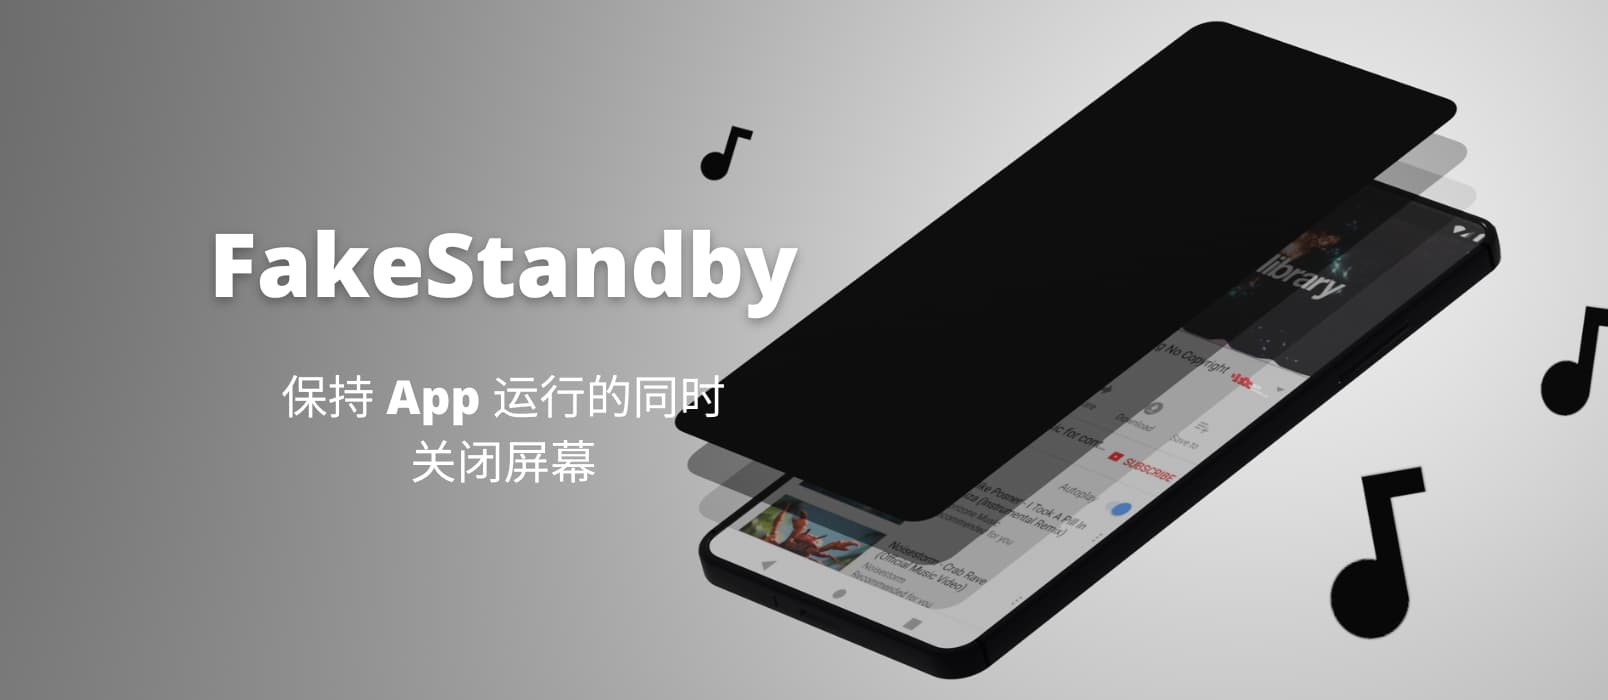 FakeStandby - 保持 App 运行的同时关闭屏幕[Android]